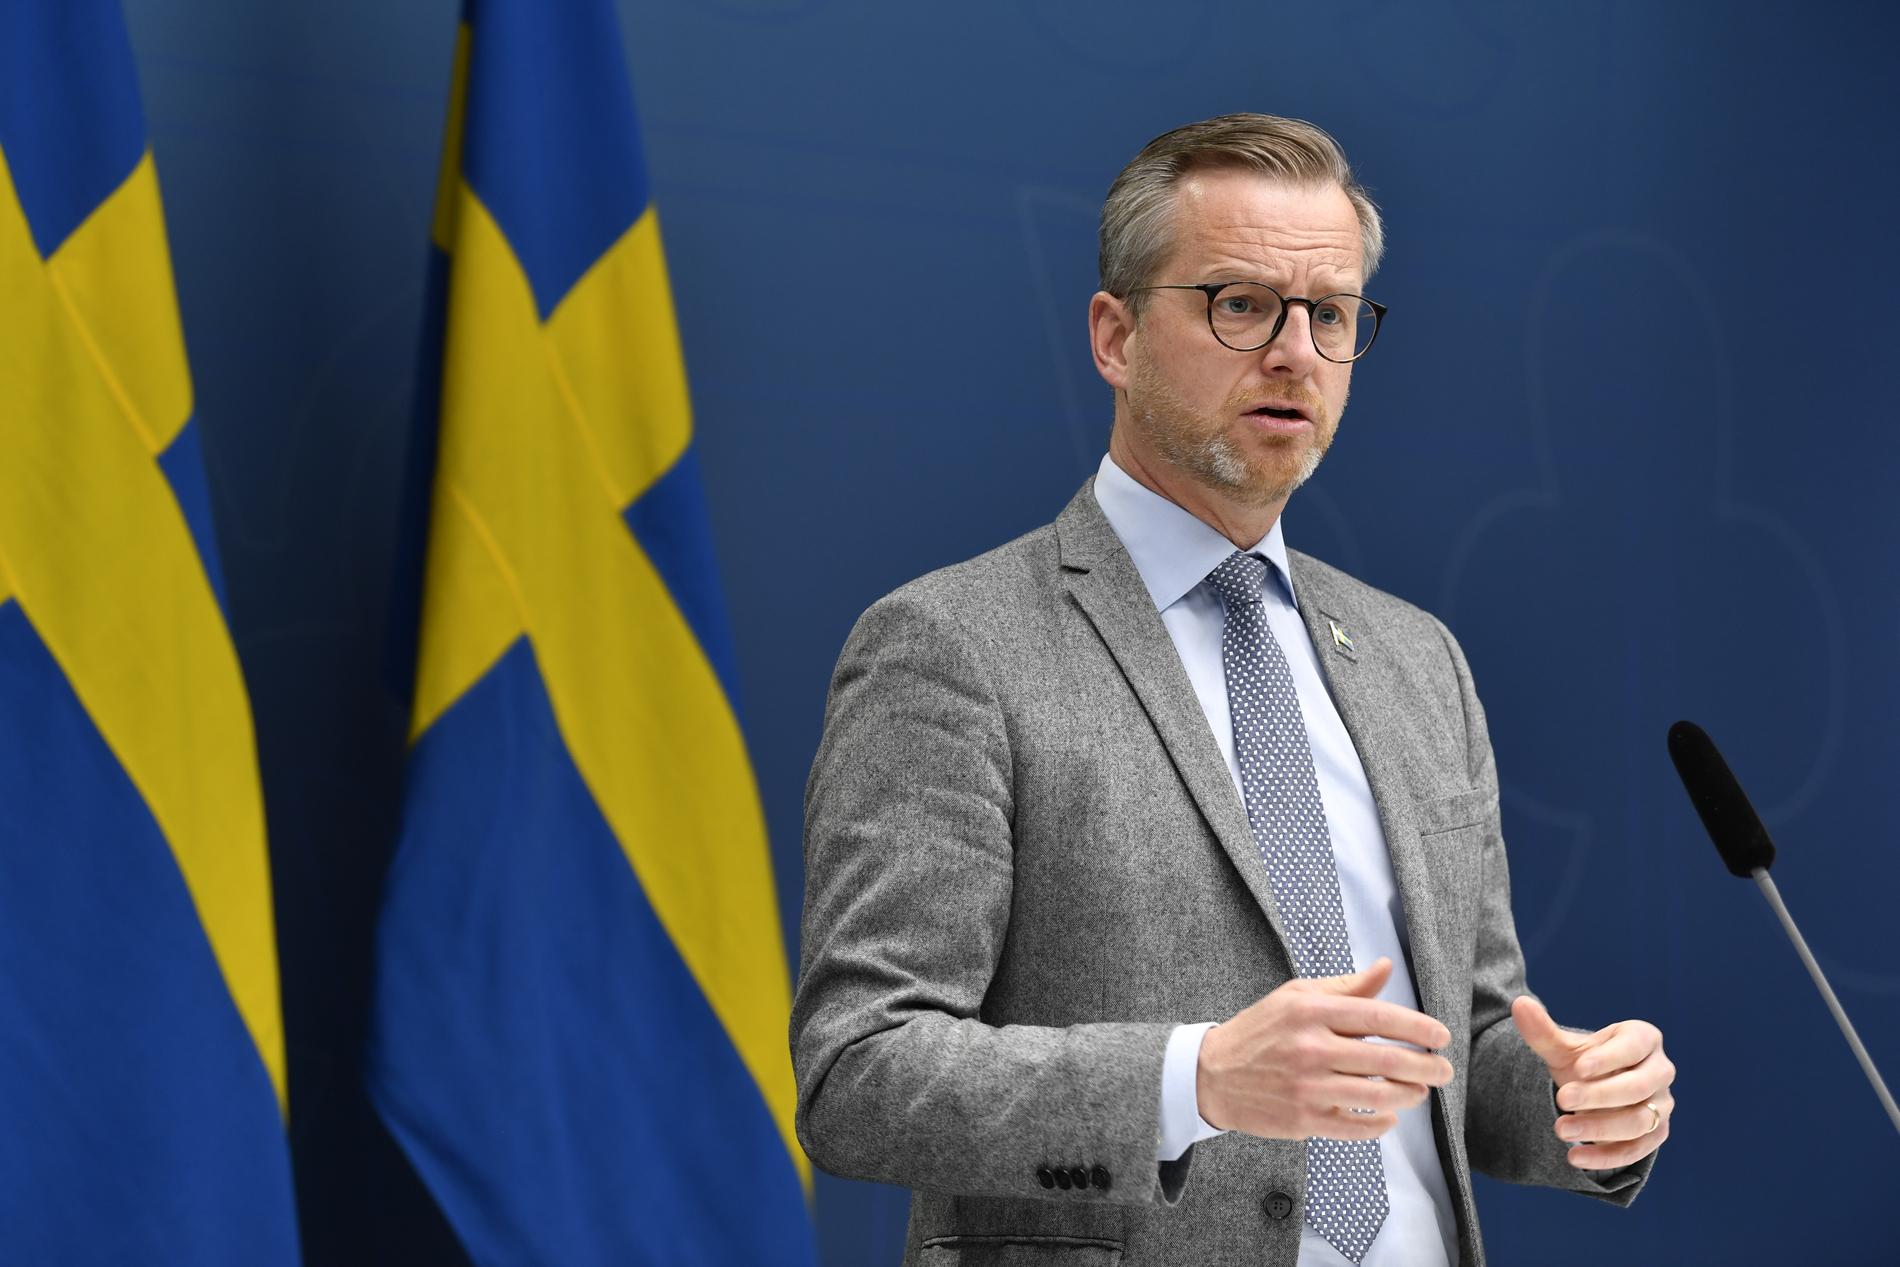 Inrikesminister Mikael Damberg (S) under en pressträff om coronaviruset och läget inför Valborg.